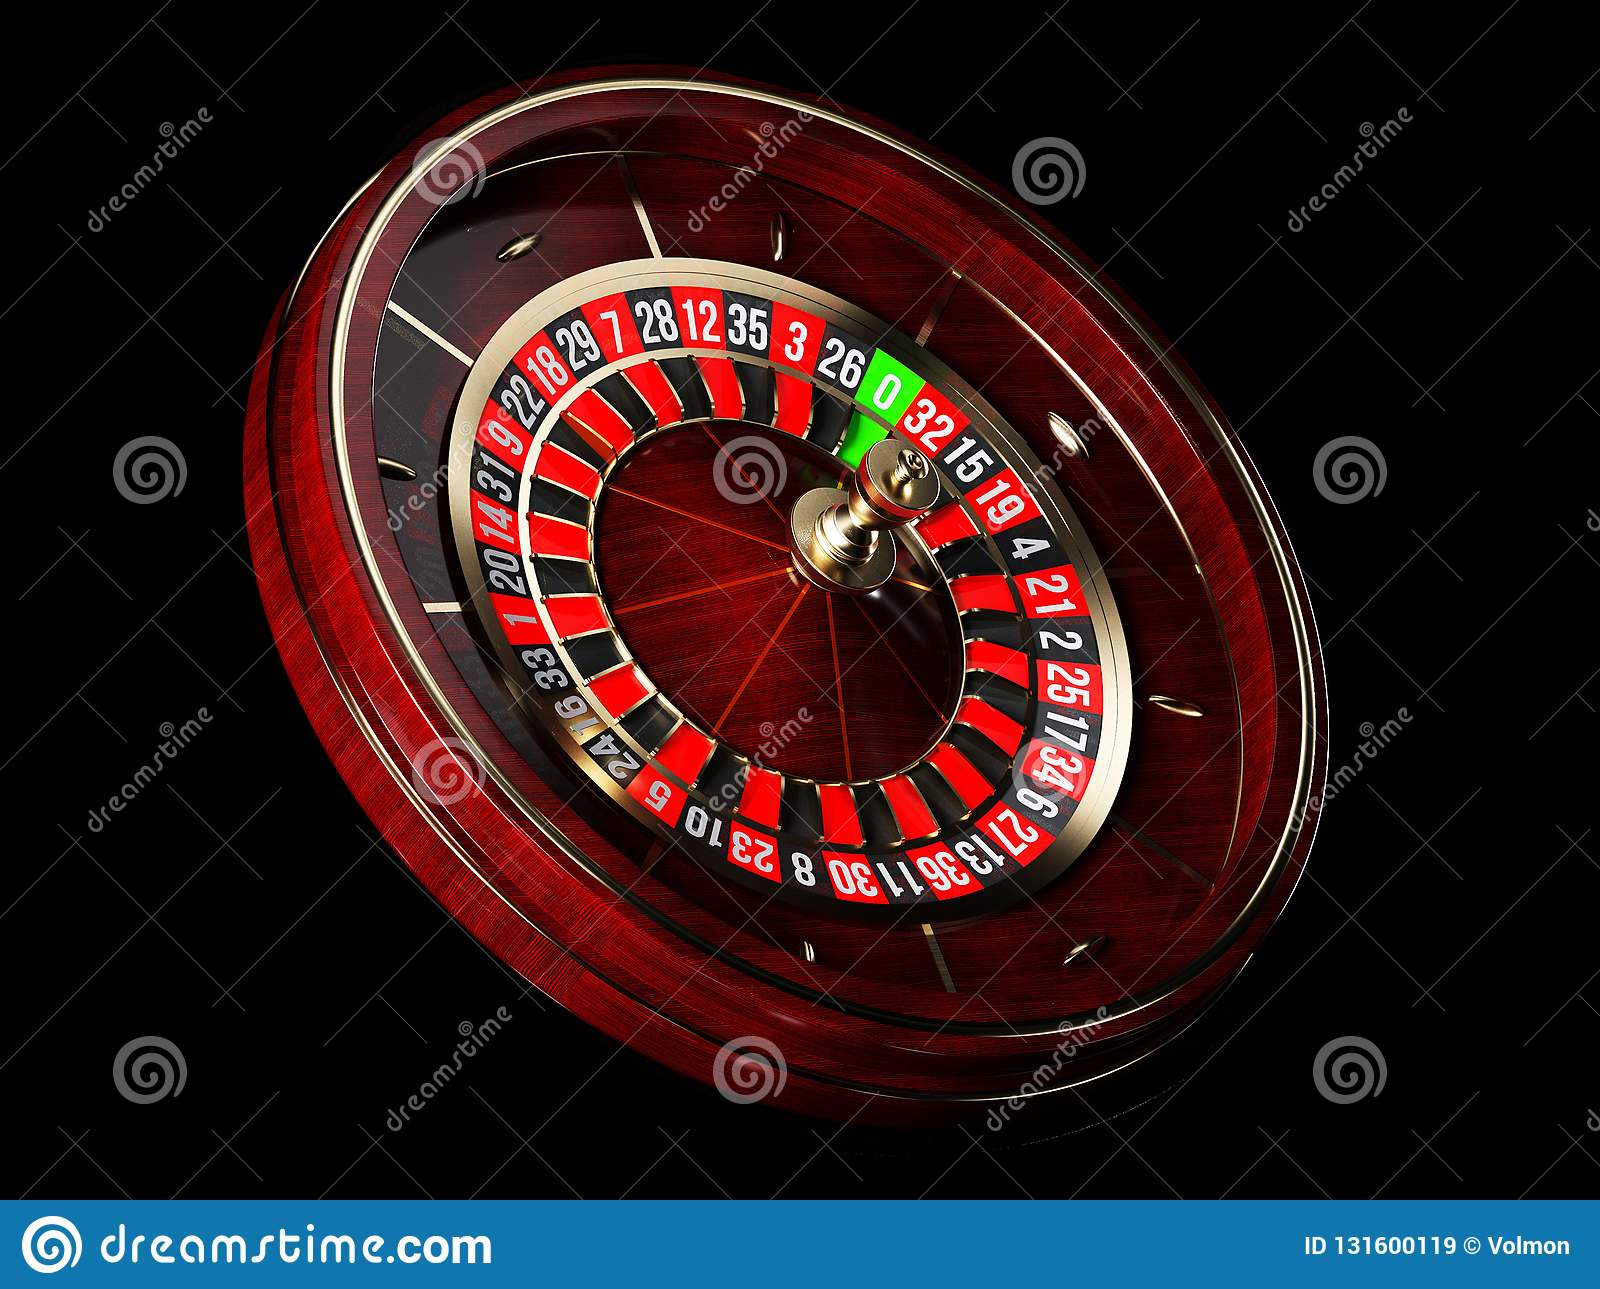 Cash game casino